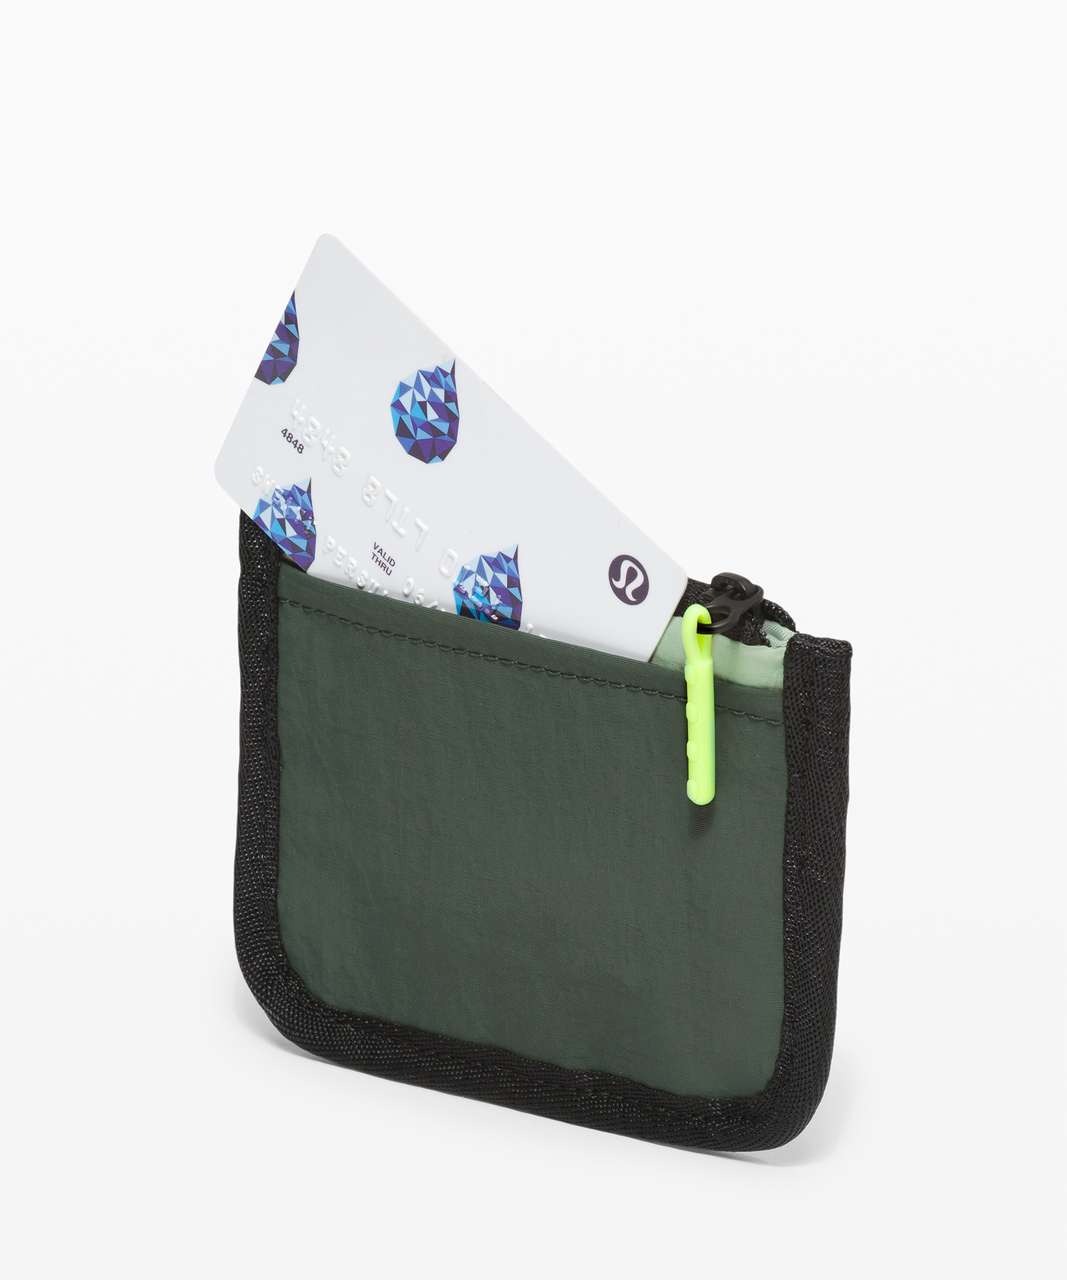 Lululemon True Identity Card Case - Green Fern / Smoked Spruce / Neo Mint